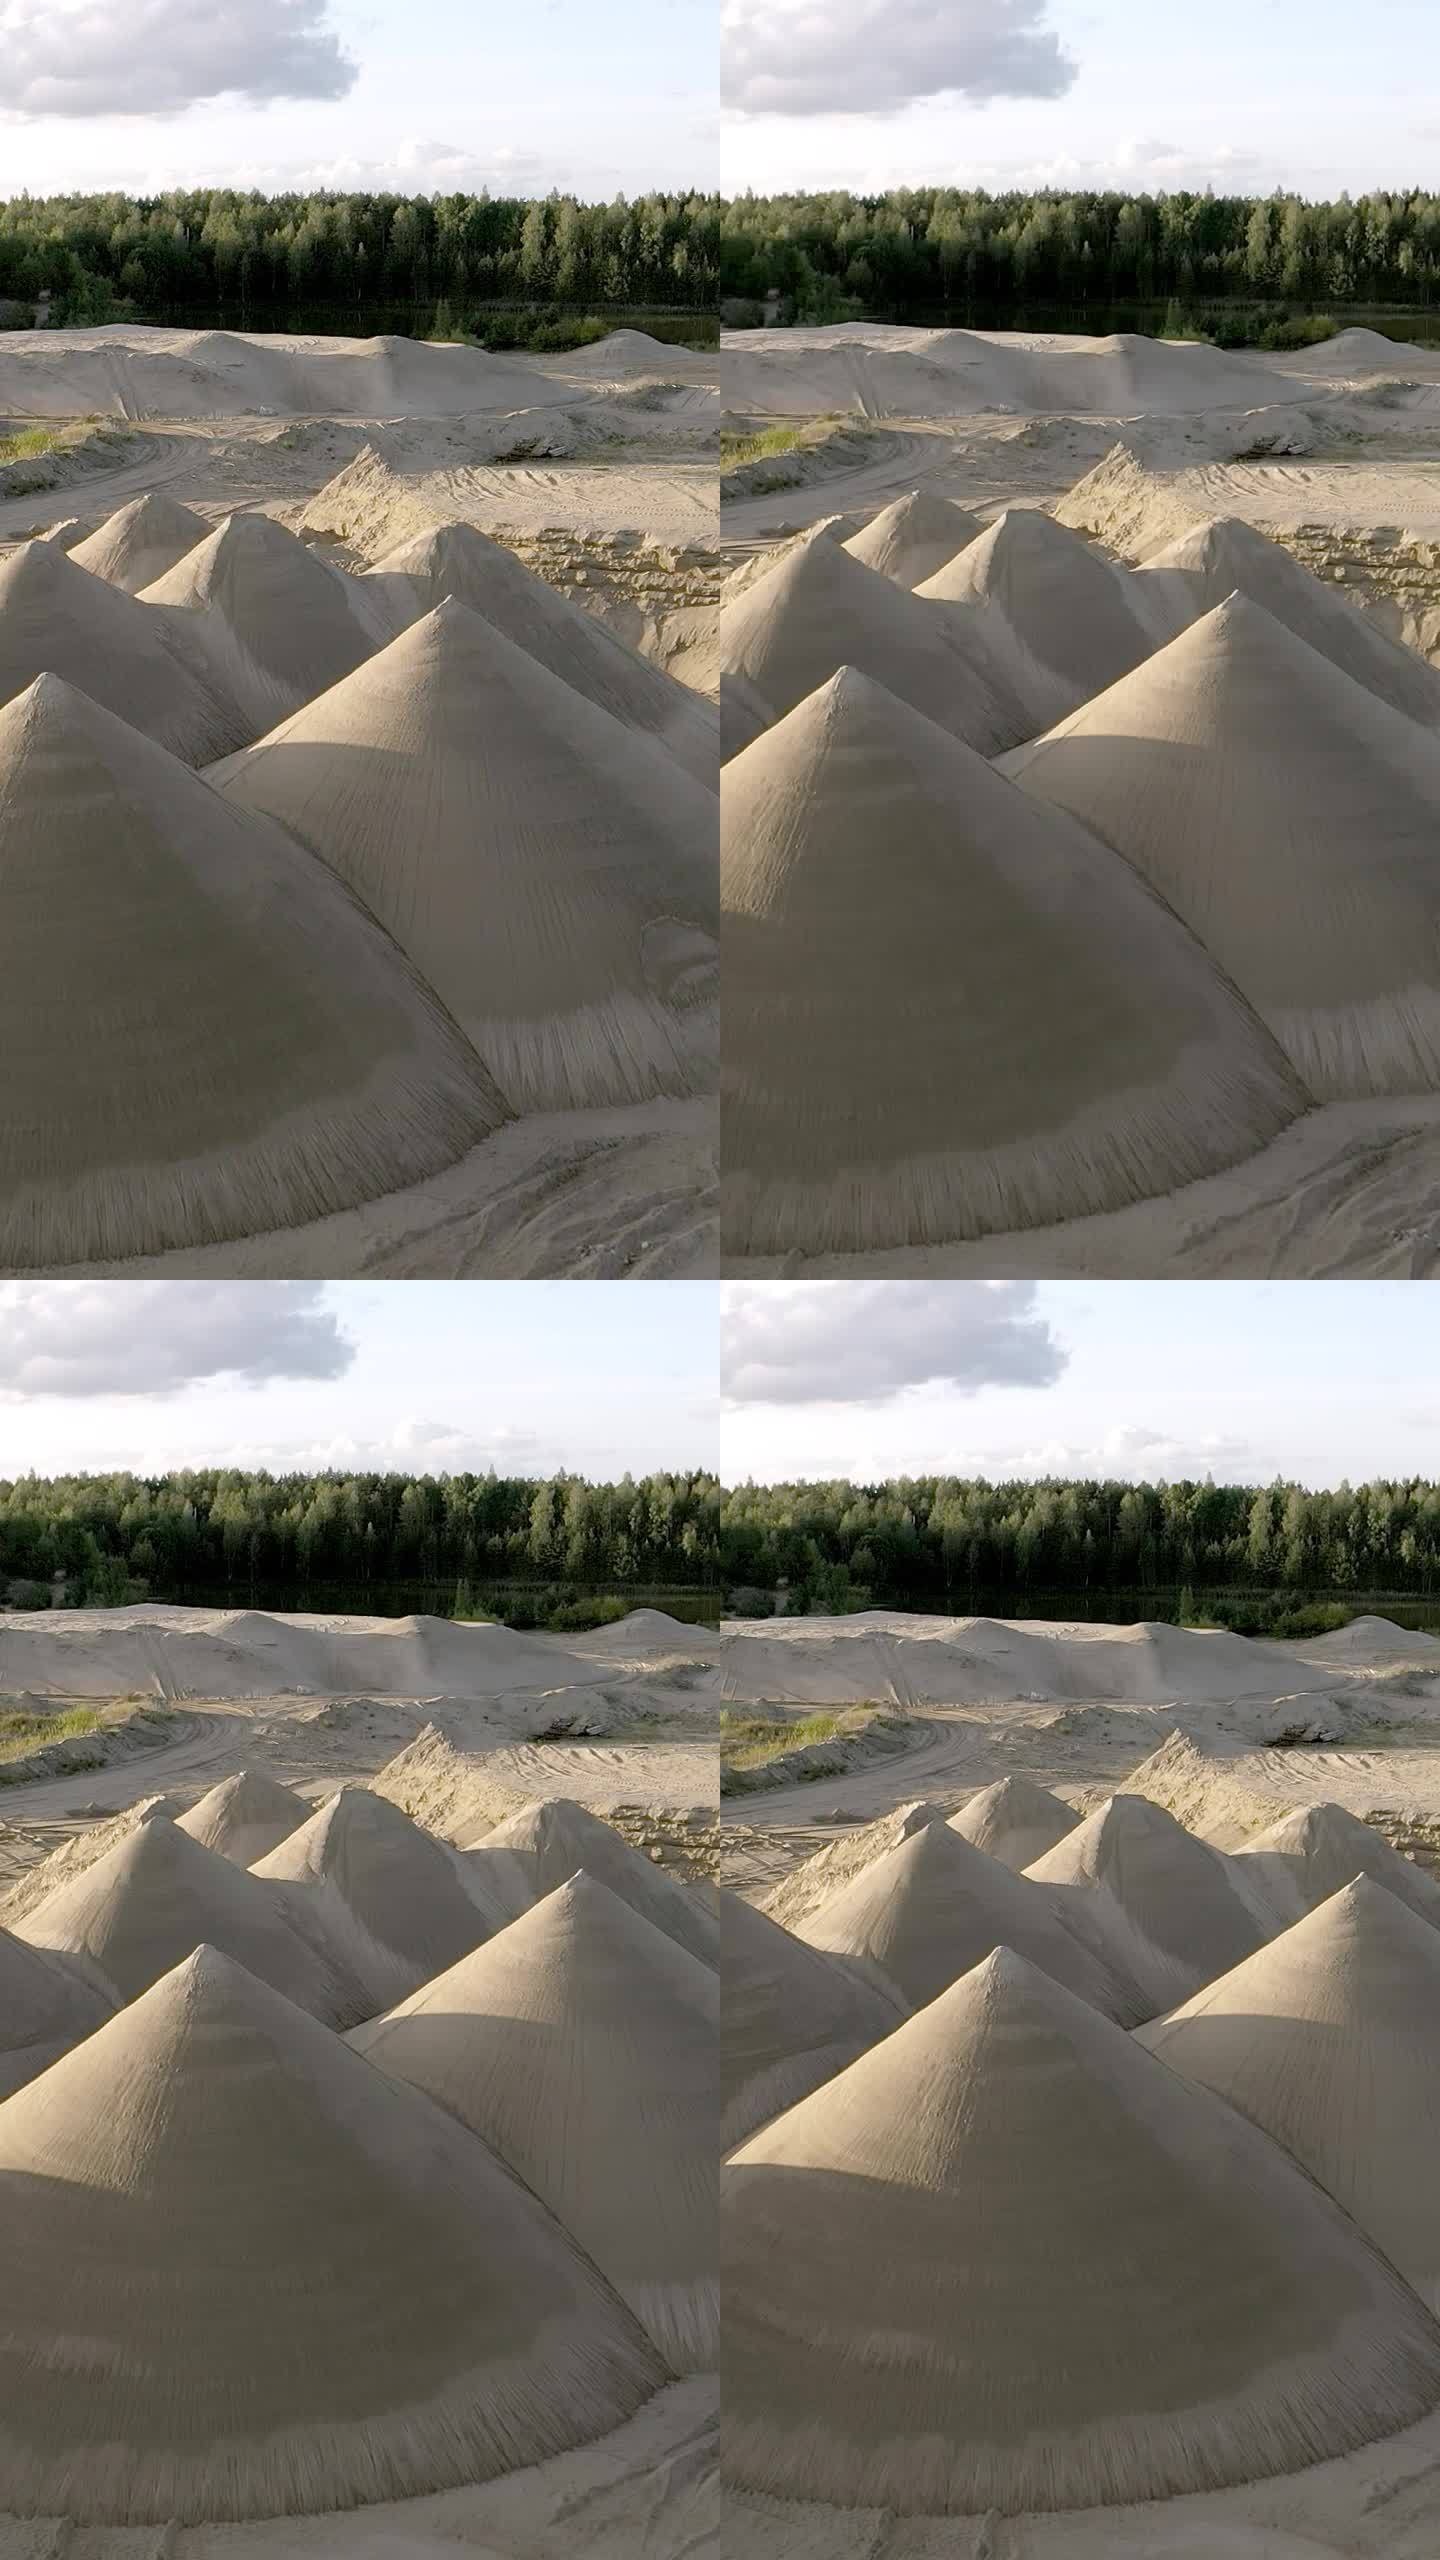 矿区的沙堆。镜头从左向右缓慢移动。垂直拍摄